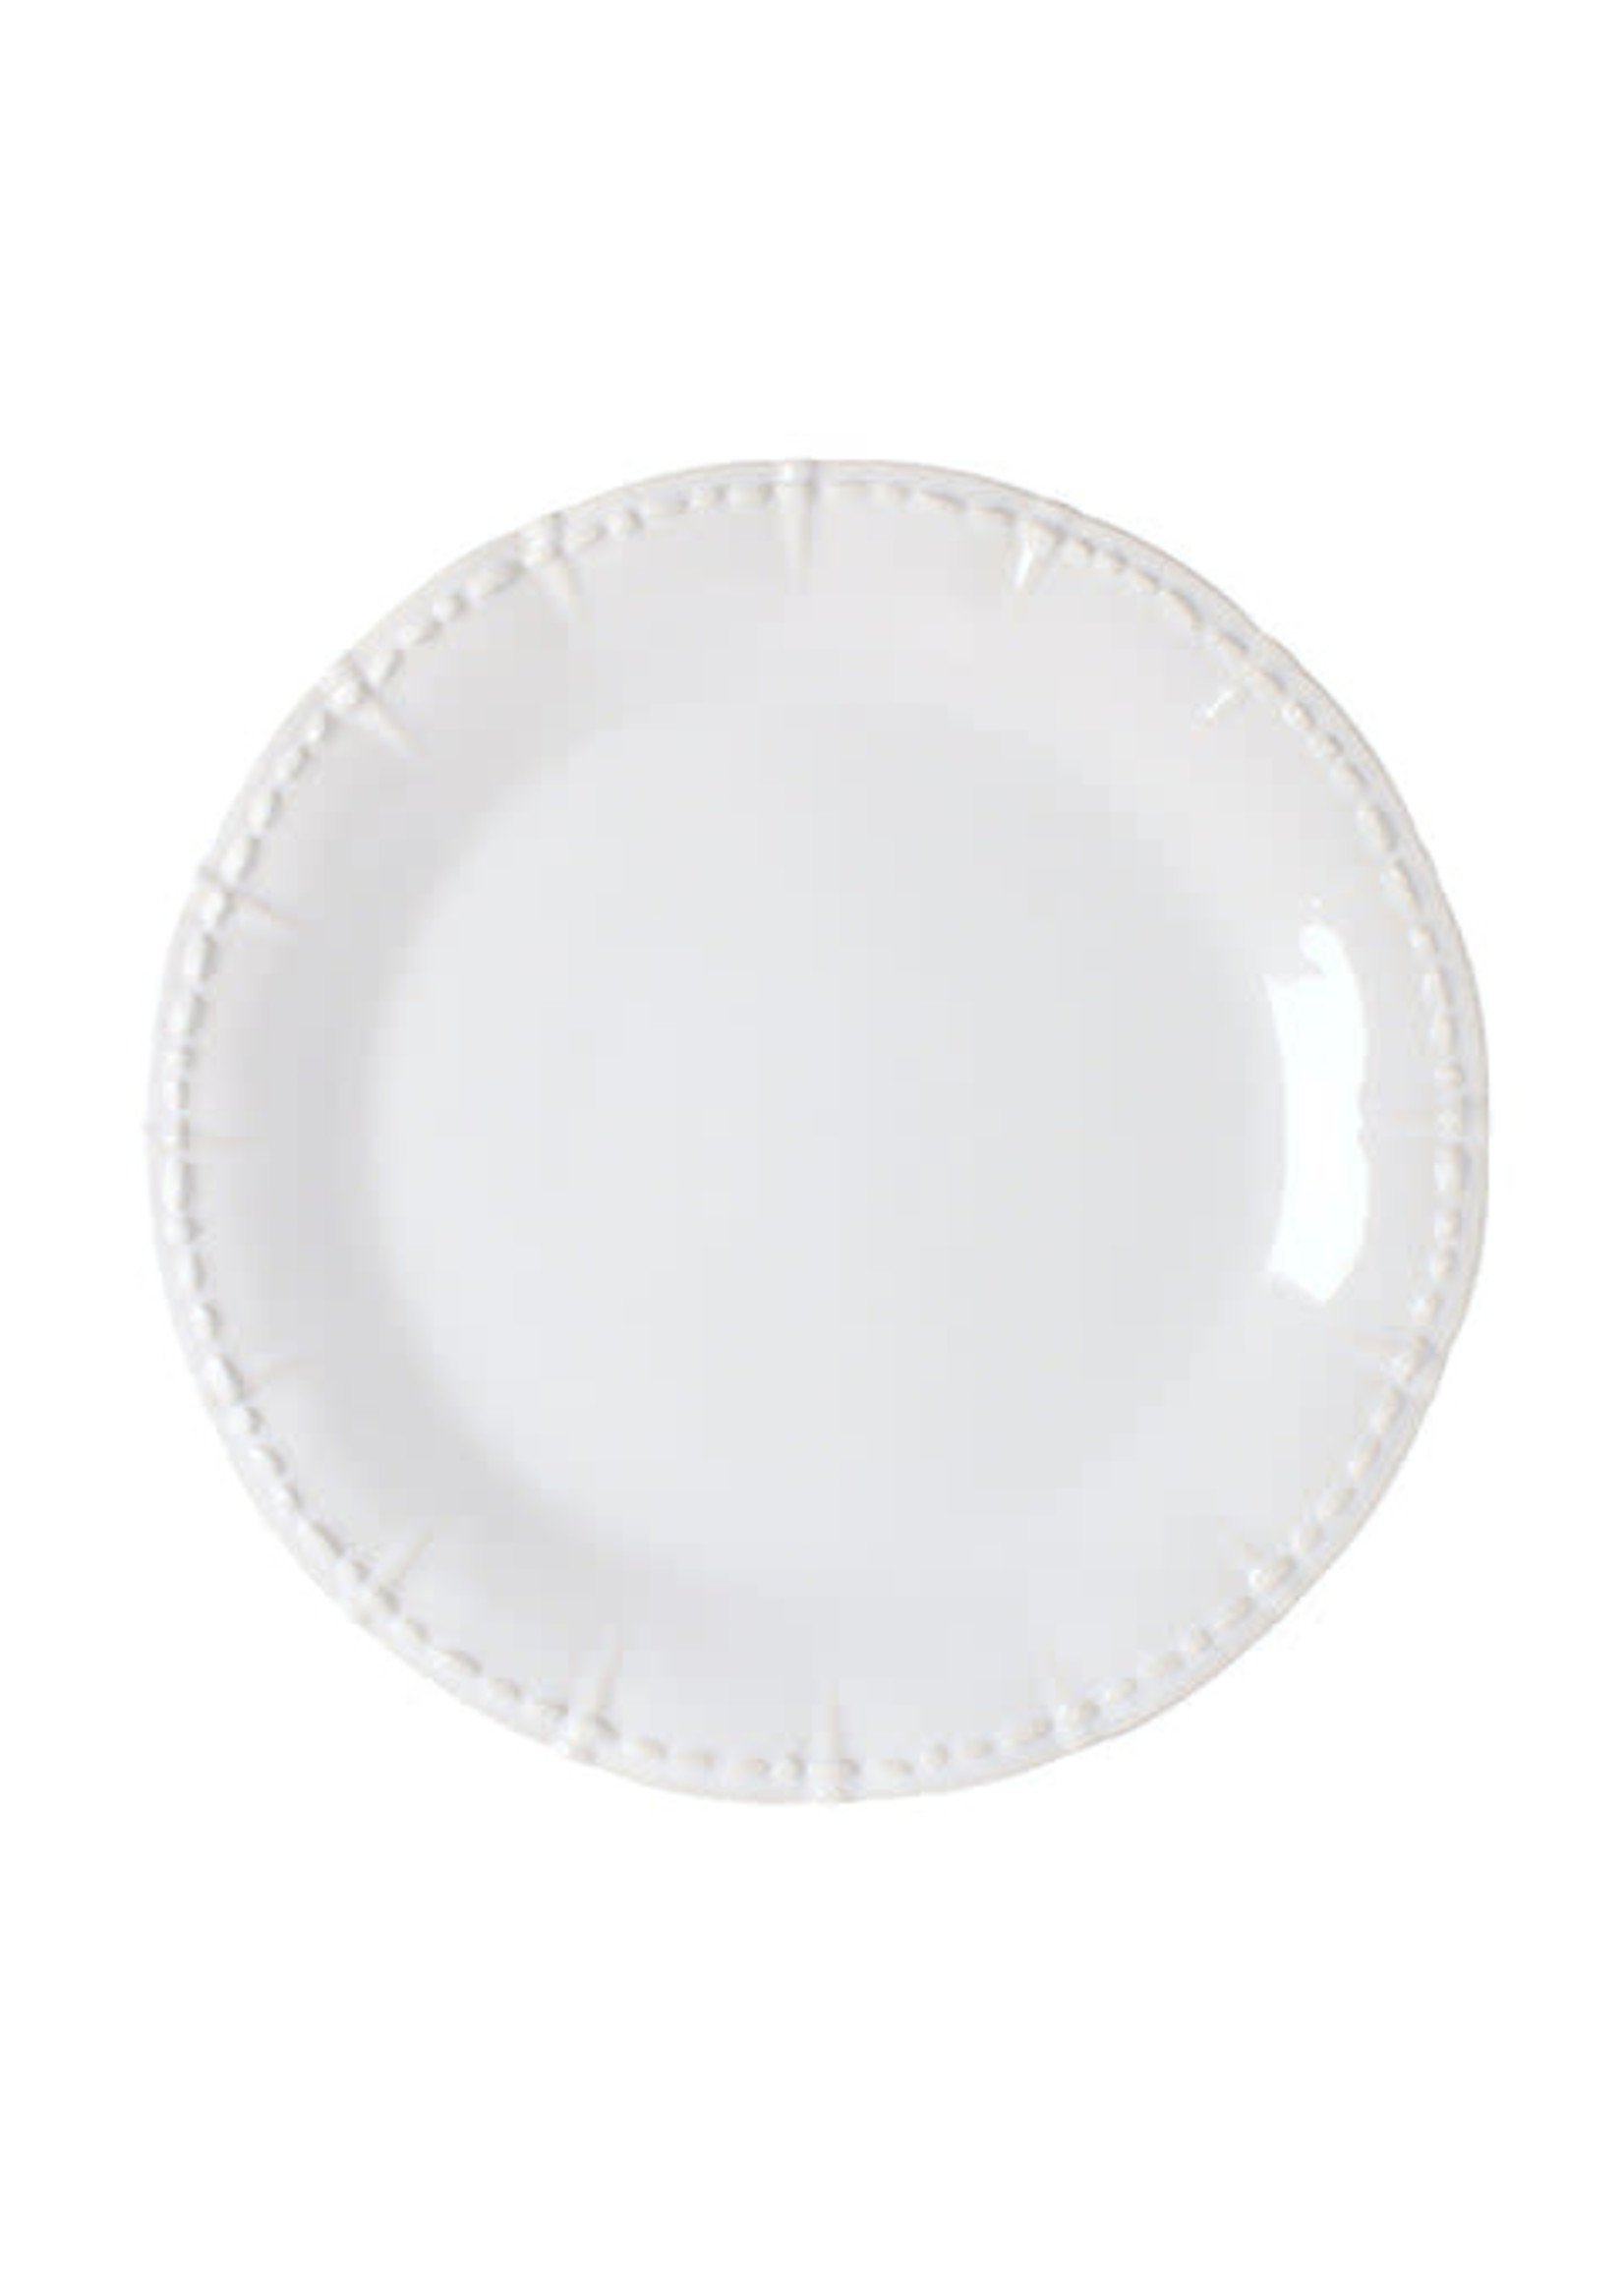 Skyros Skyros Historia Dinner Plate, Paperwhite